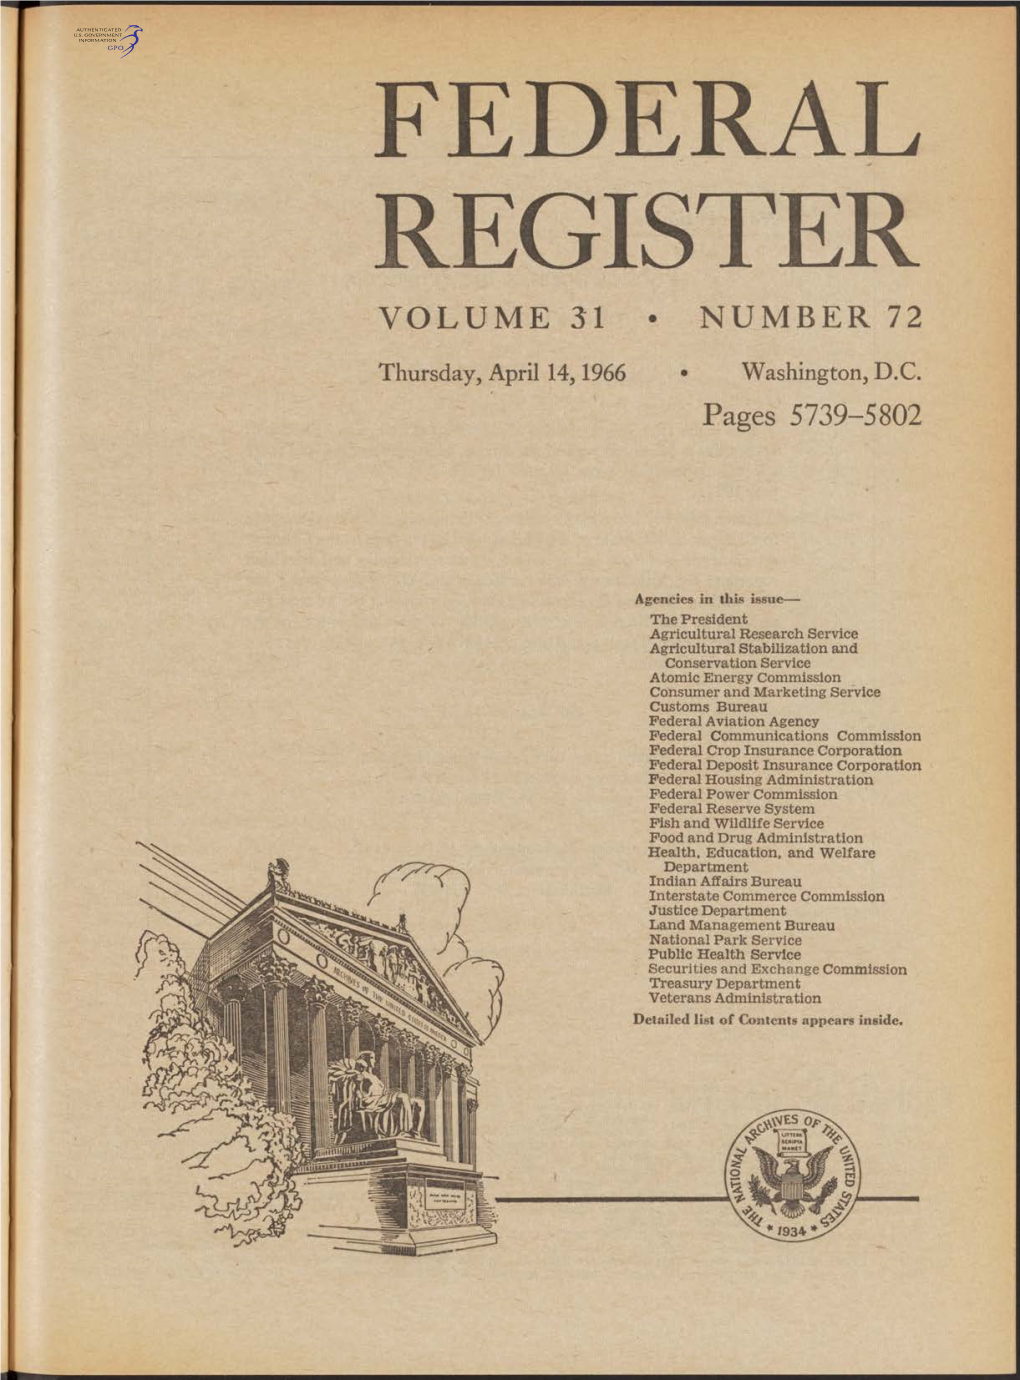 Federal Register Volume 31 • Number 72